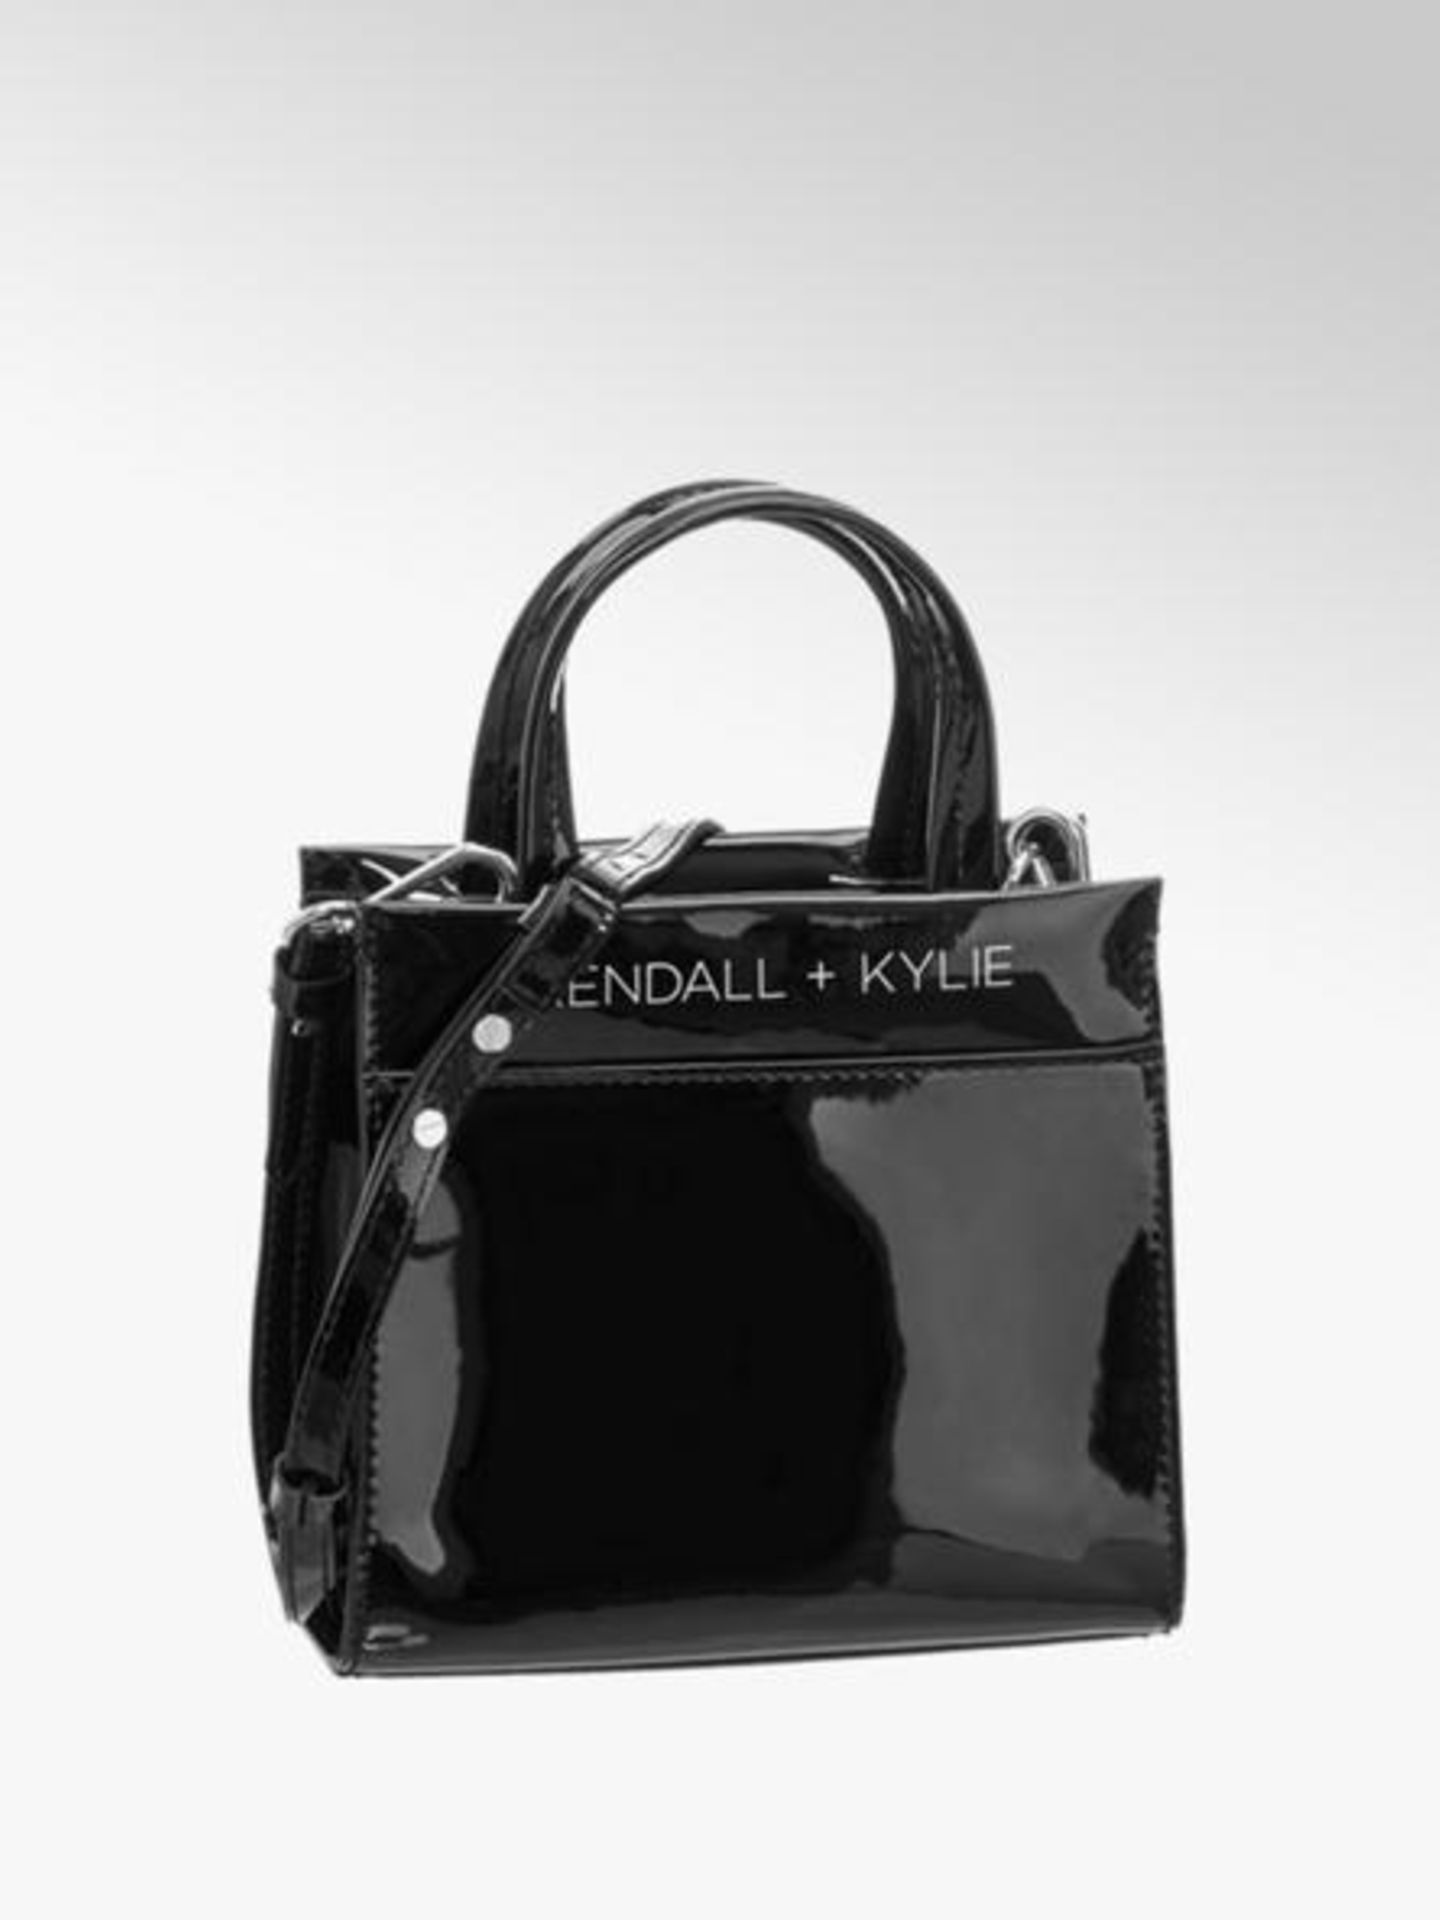 Neu in den Shops: Kendall + Kylie Handtasche von Deichmann